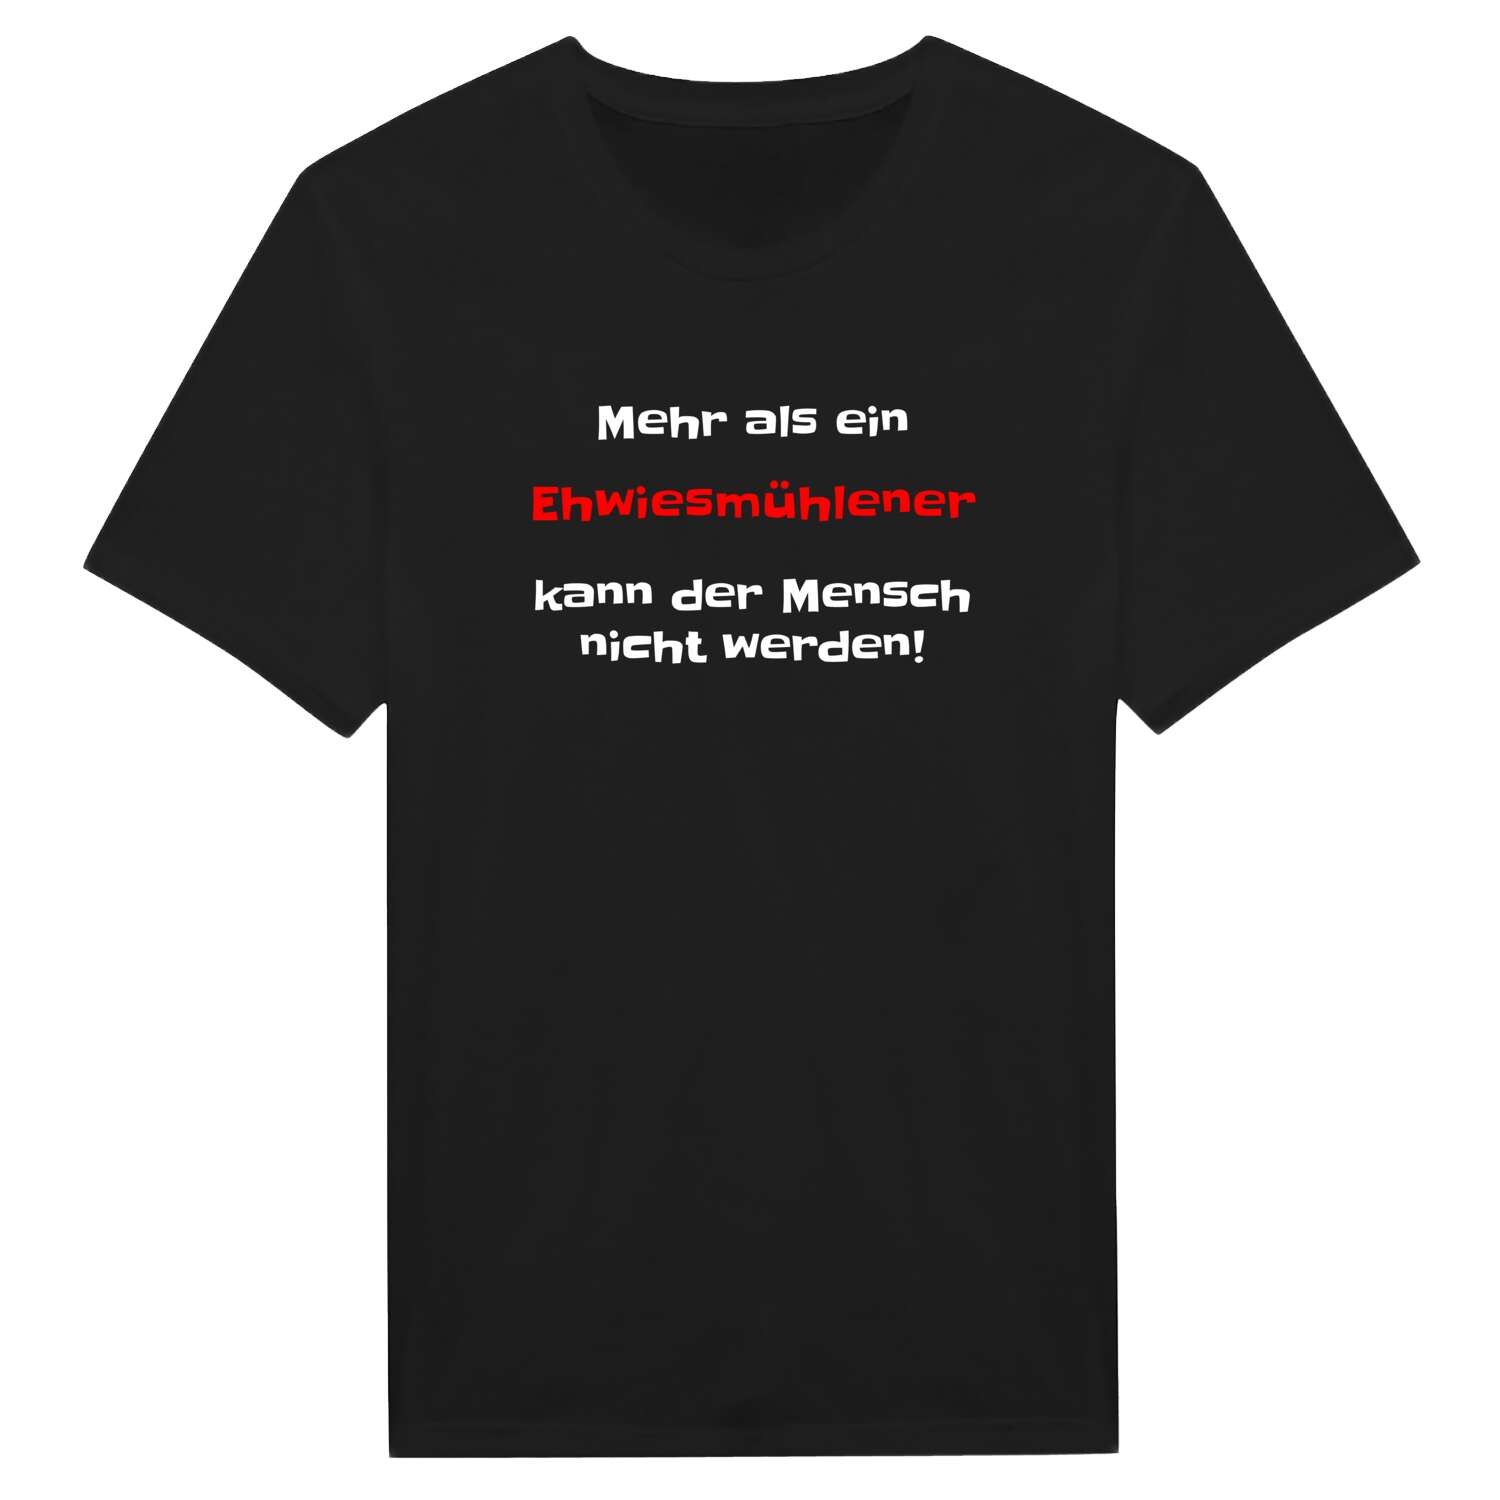 Ehwiesmühle T-Shirt »Mehr als ein«